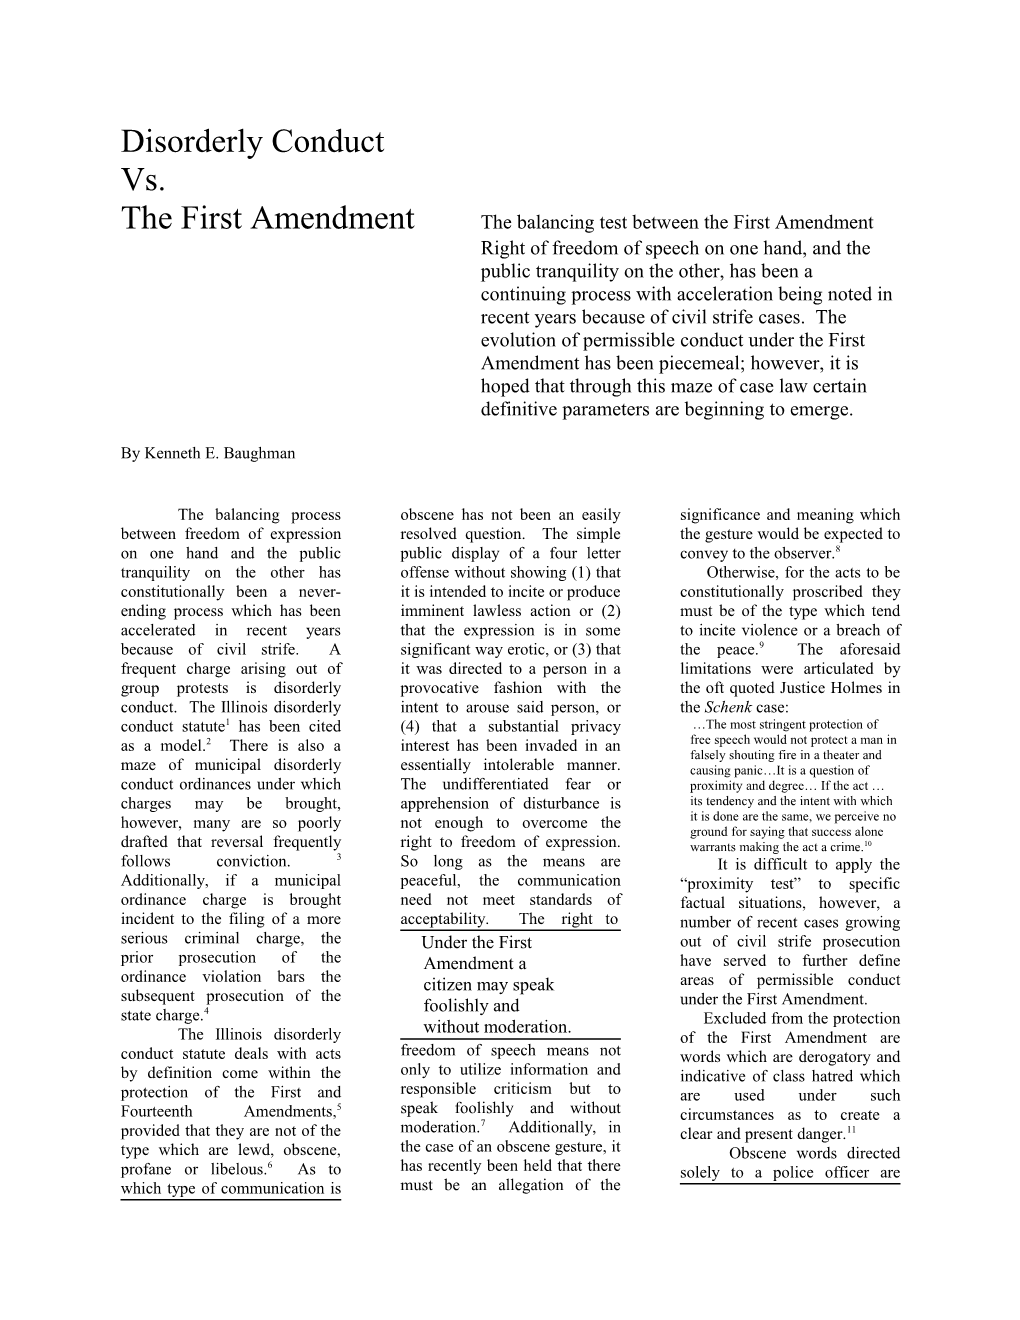 The First Amendment the Balancing Test Between the First Amendment